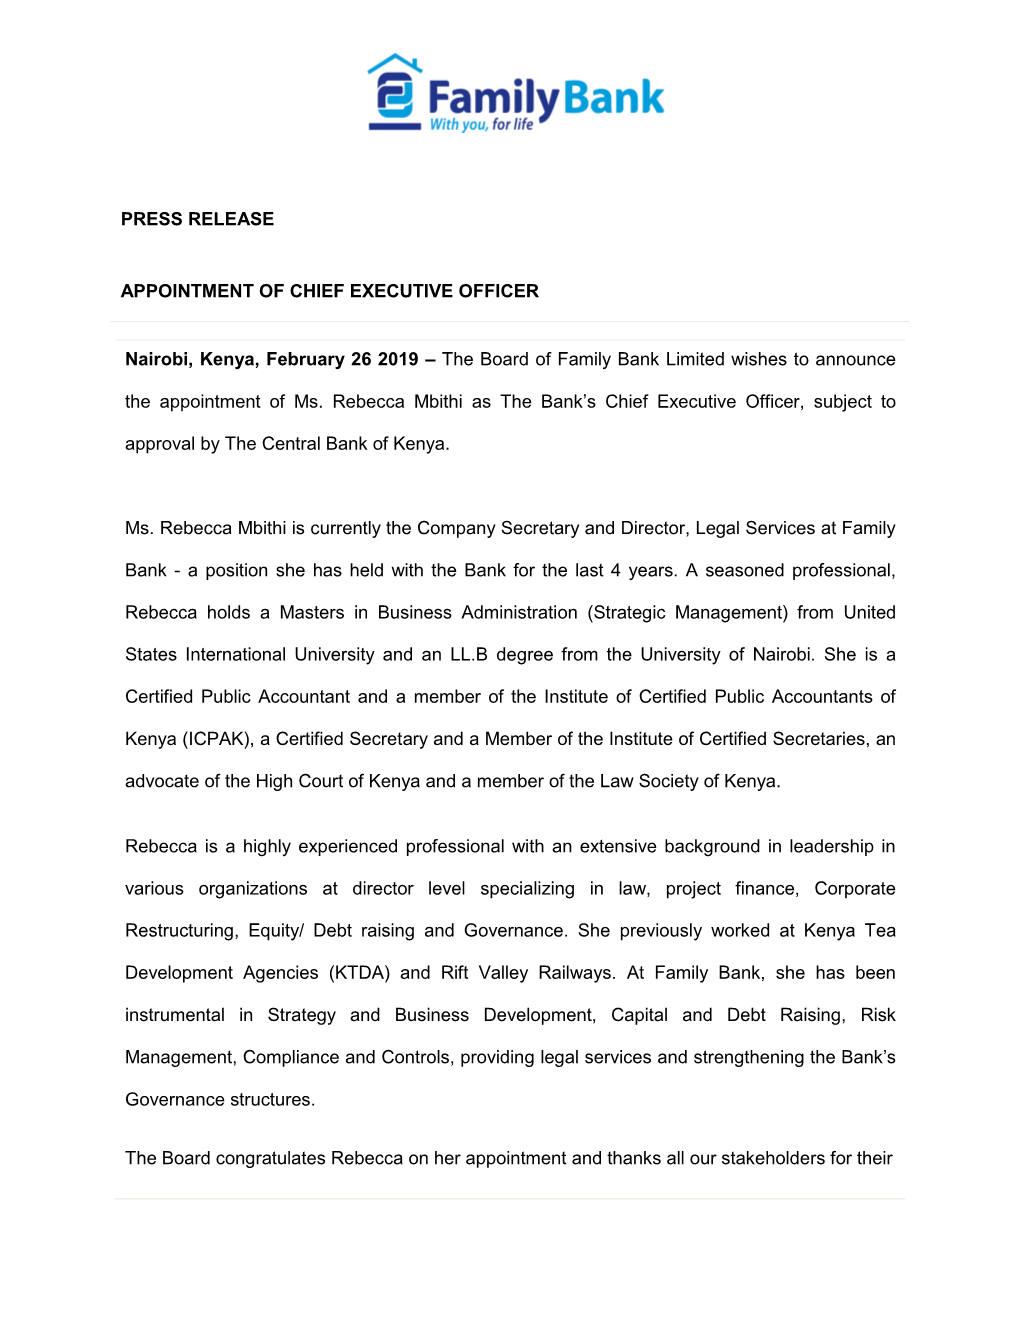 CEO Announcement Press Release